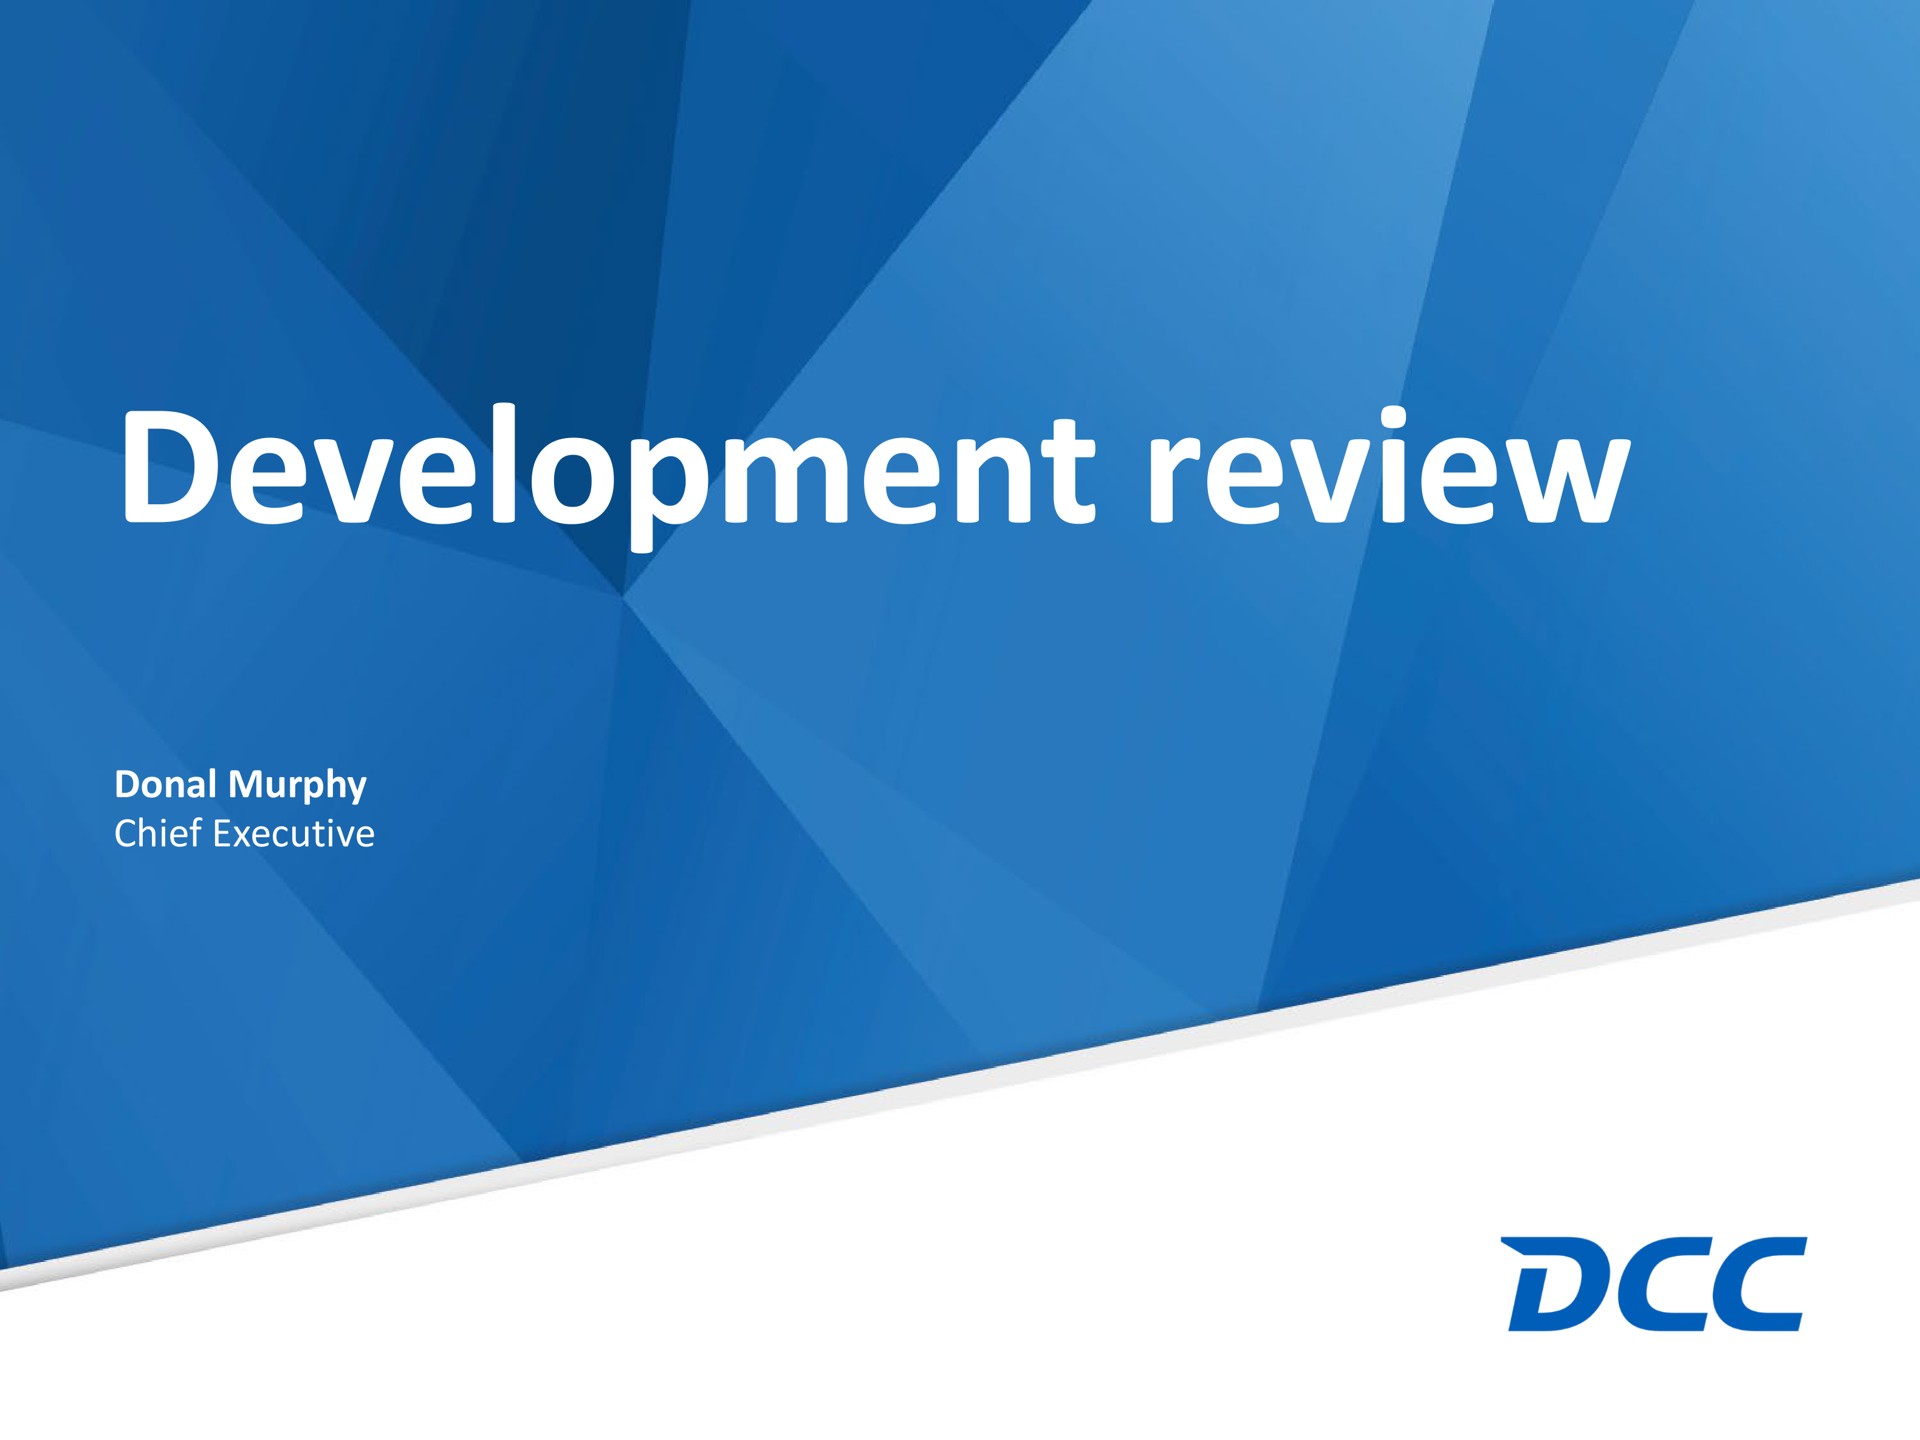 development review | DCC